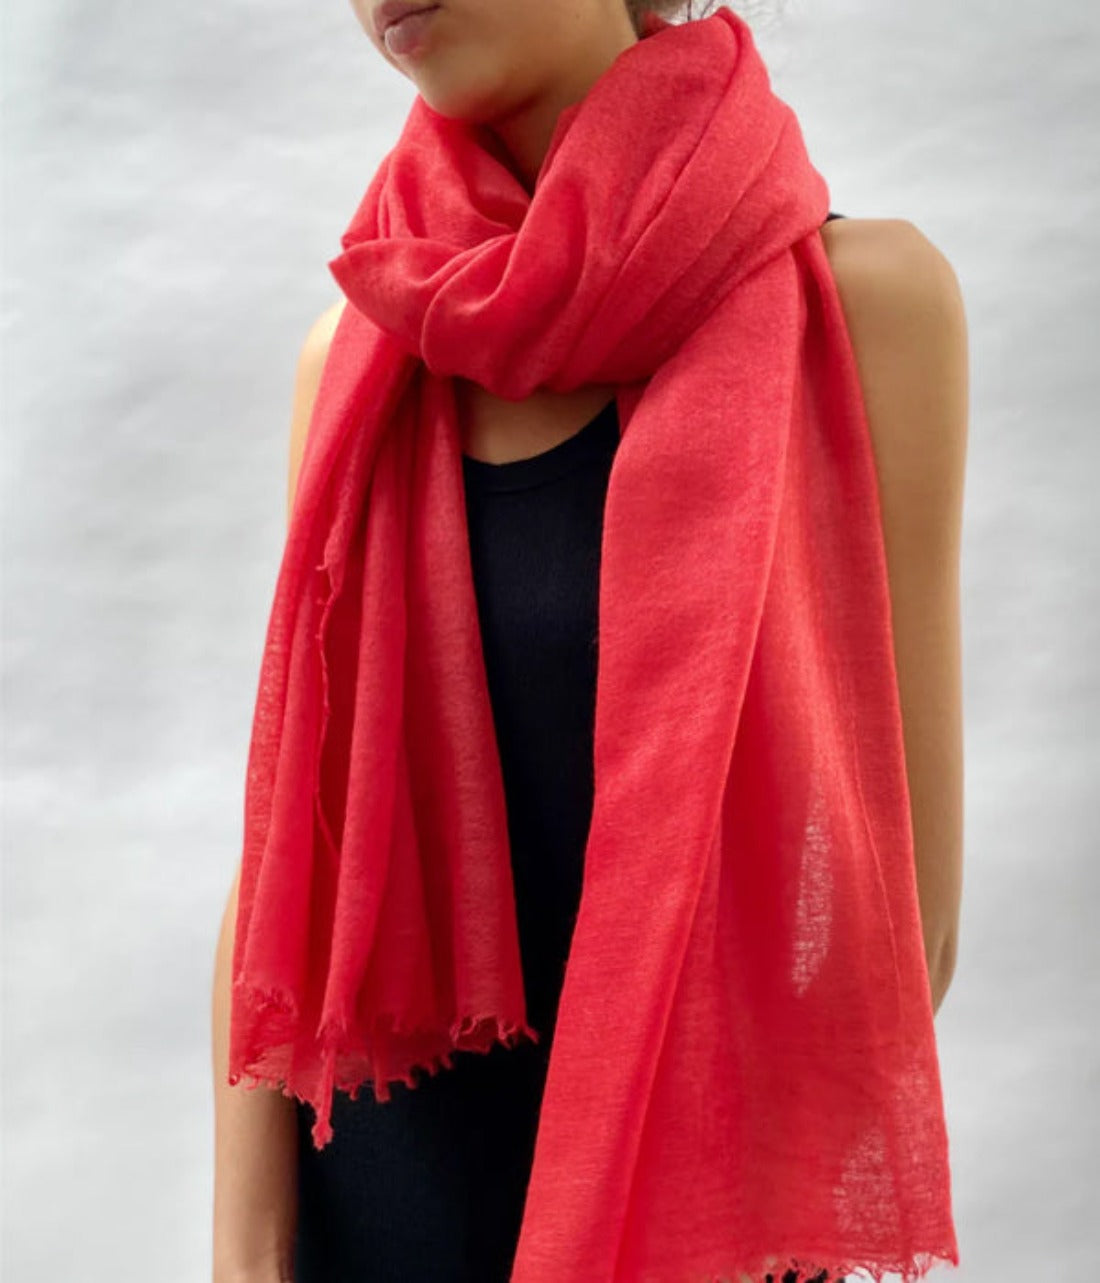 marmee lust 2 red scarf